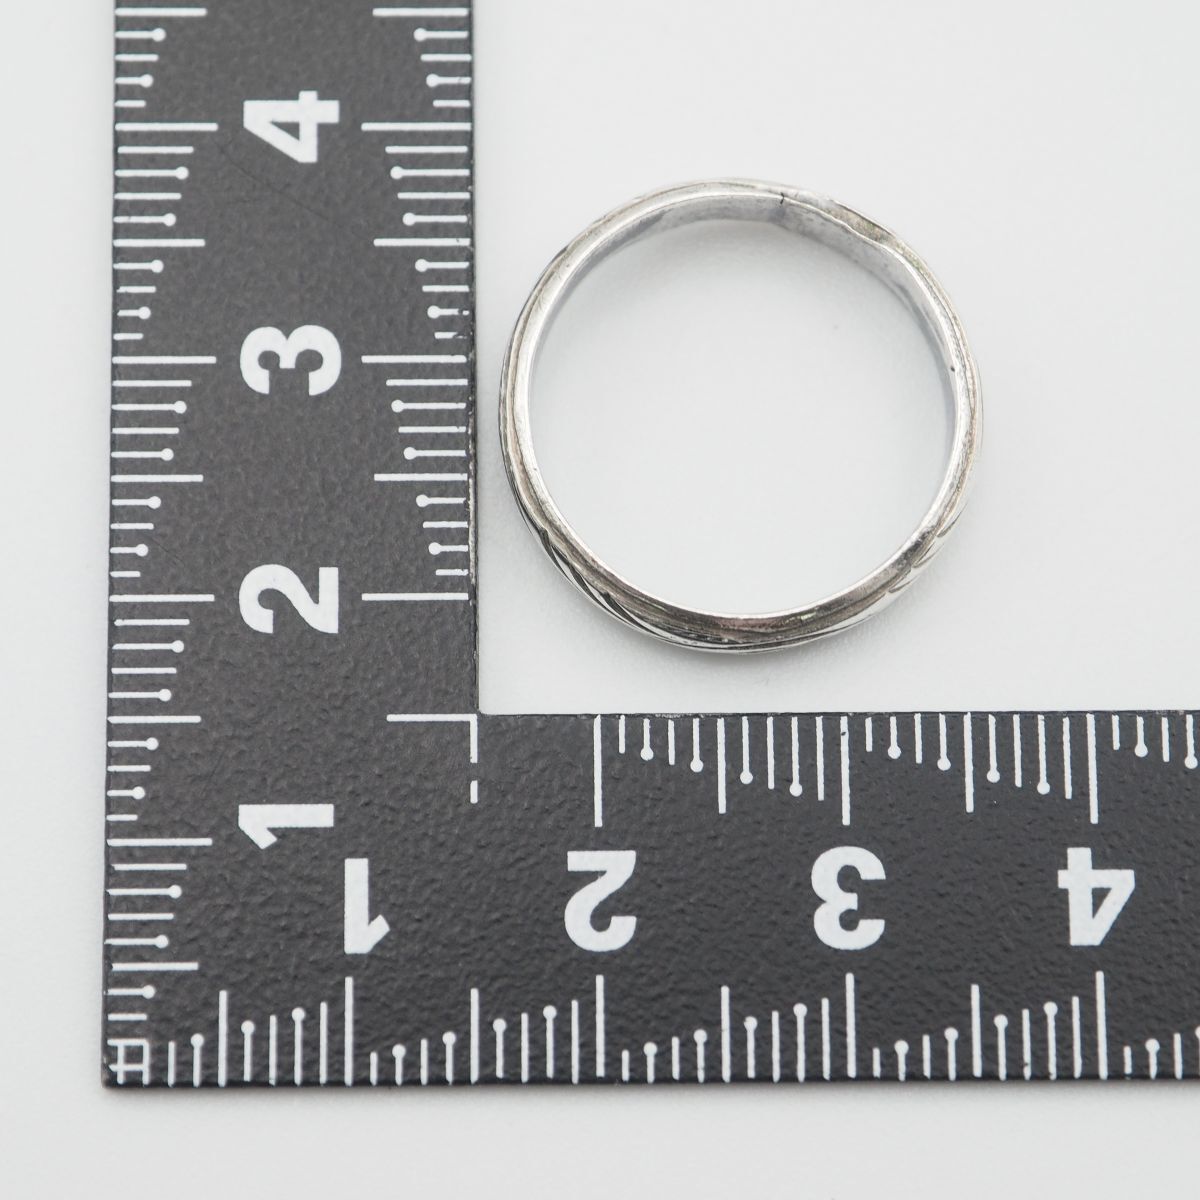 K321 Vintage SILVER печать кольцо дизайн серебряный кольцо 13 номер 